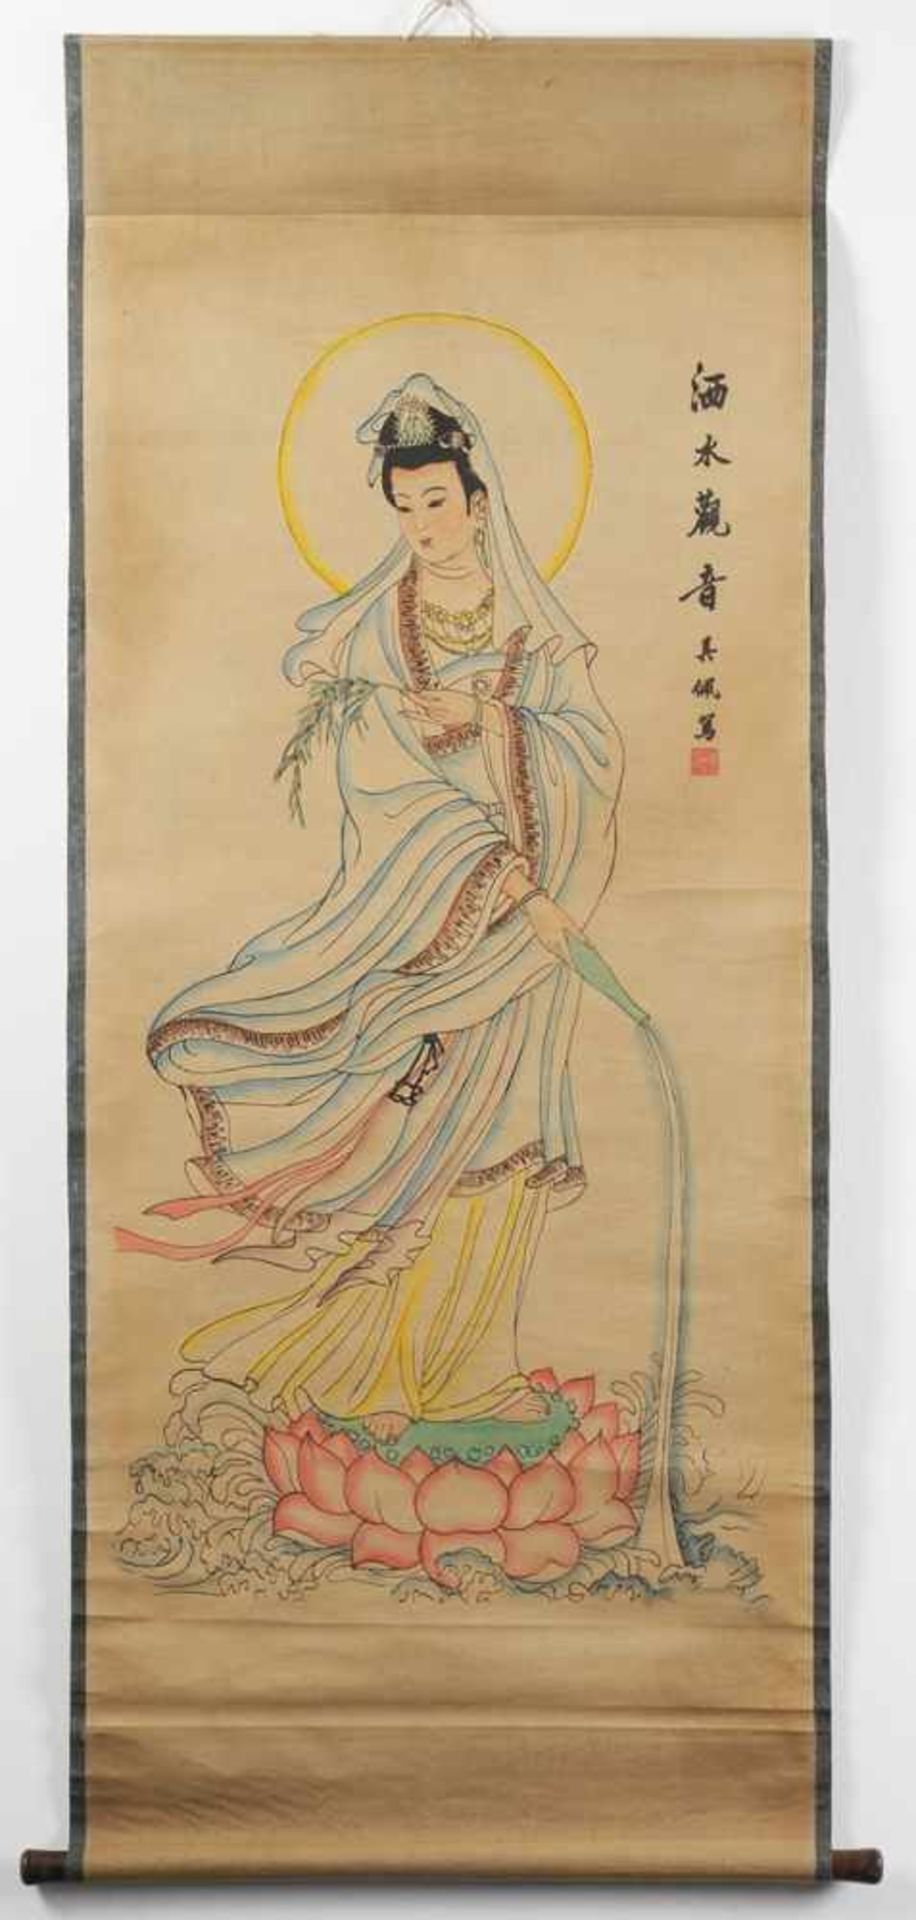 Chinesische RollbildmalereiTusche u. Farbe auf Papier. Darstellung einer Unsterblichen - wohl He